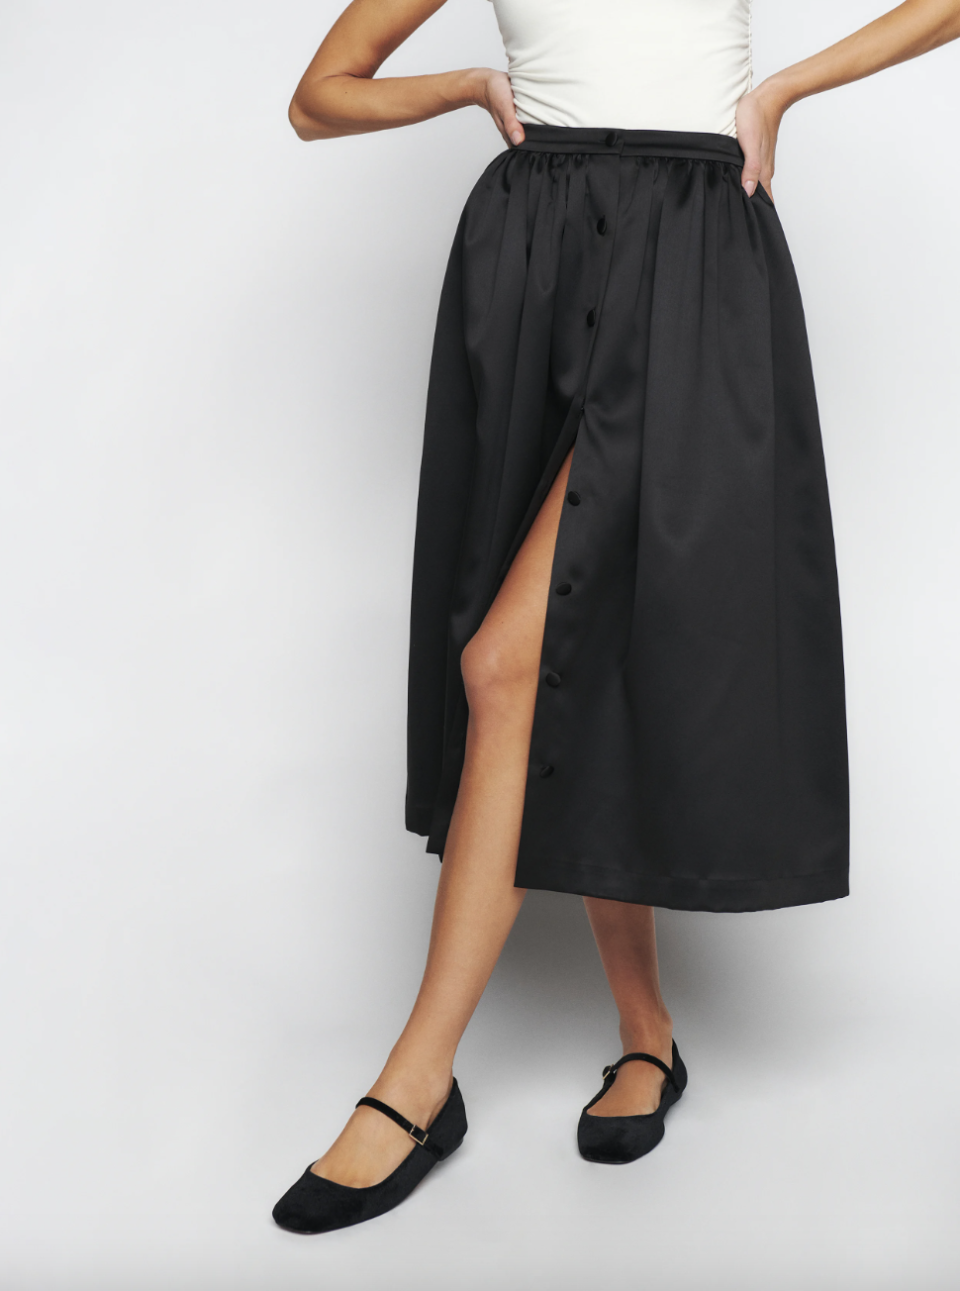 model wearing black skirt, Lola Skirt (Photo via Reformation)